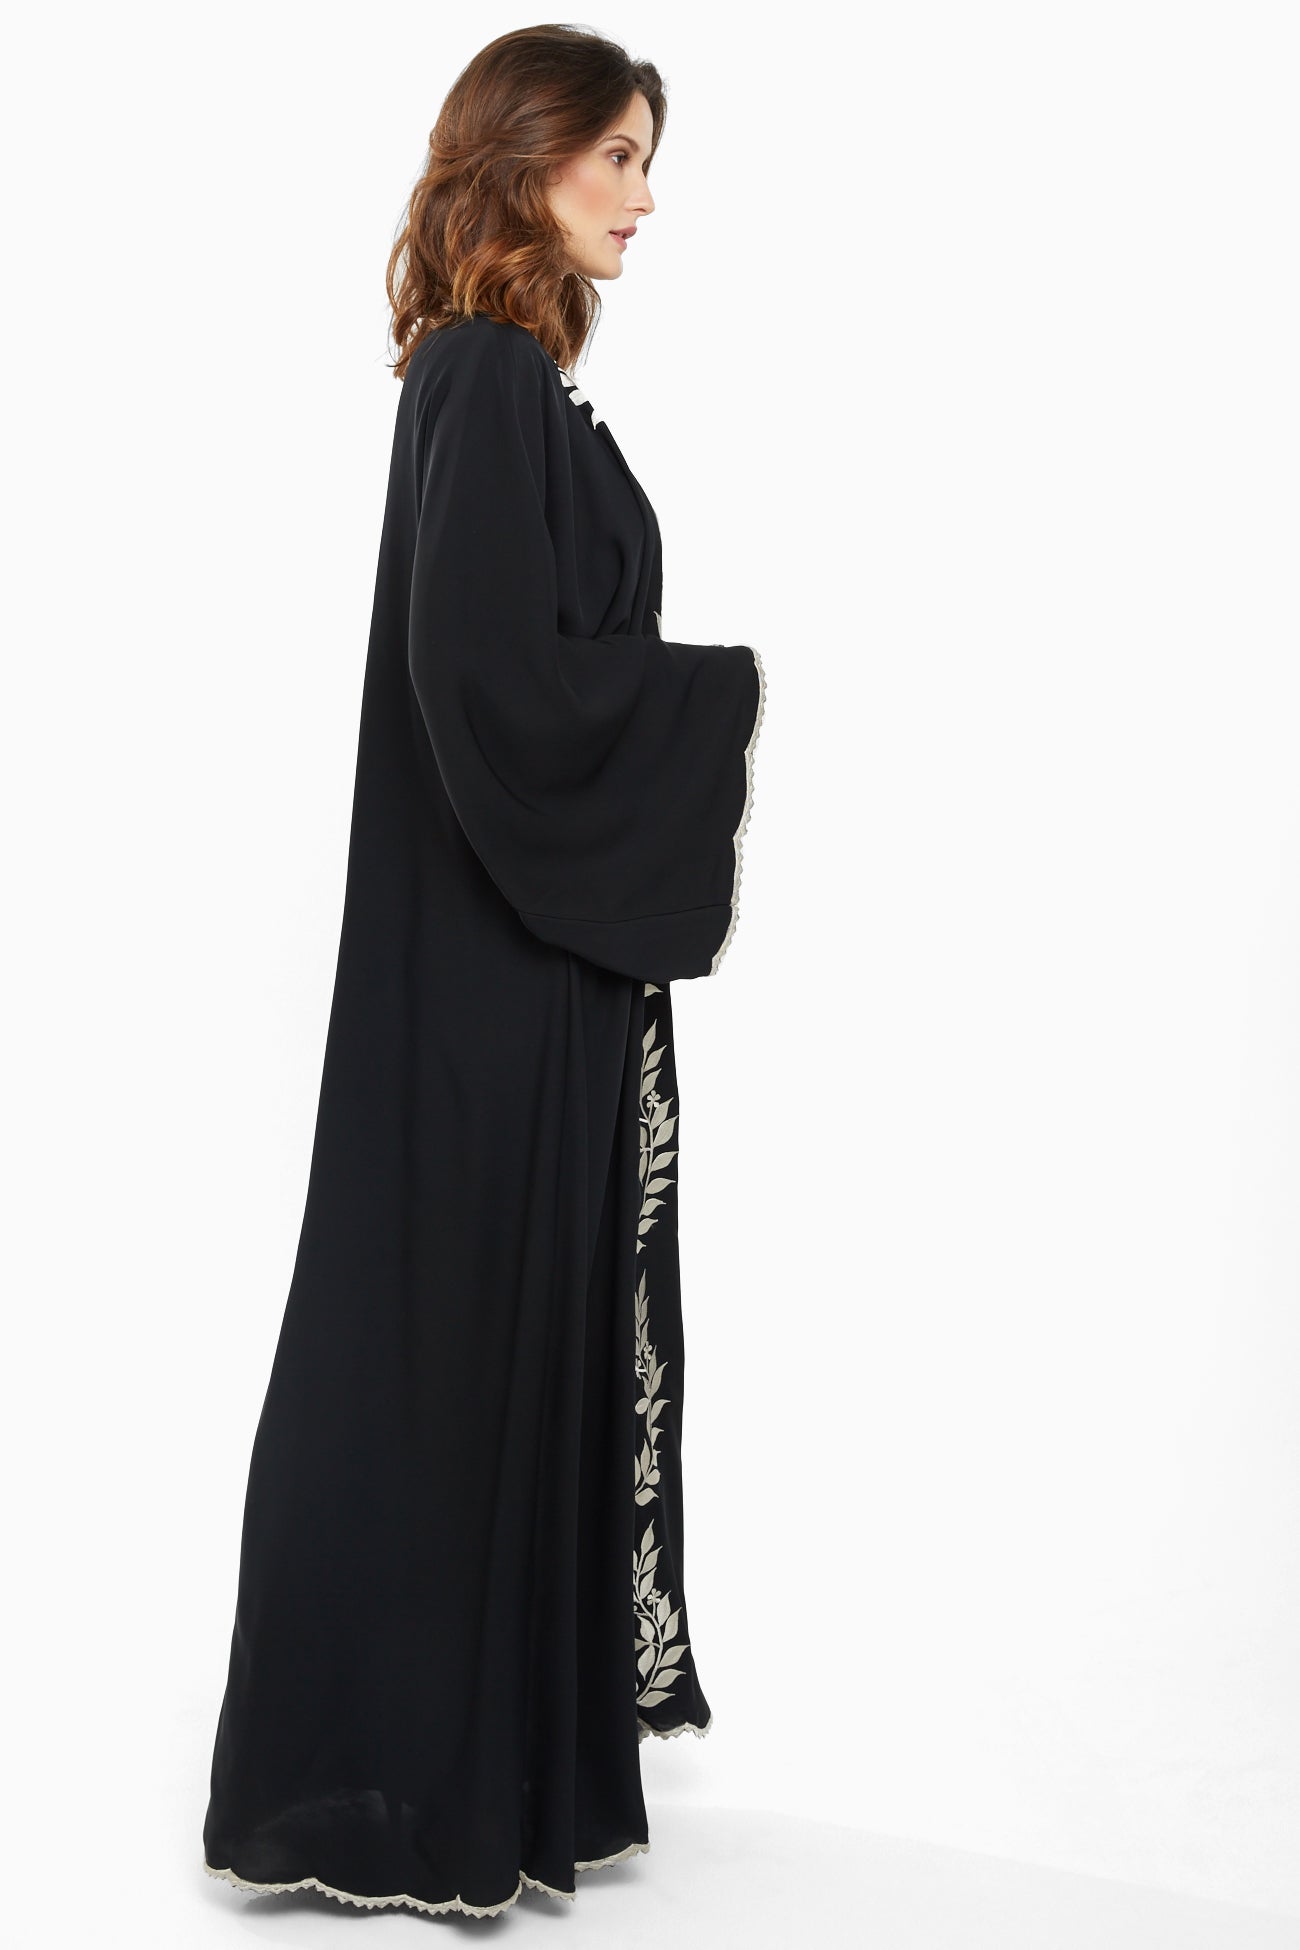 Dubai-made Nukhbaa brand Abaya a reflection of Dubai's luxury fashion scene-SQ704A